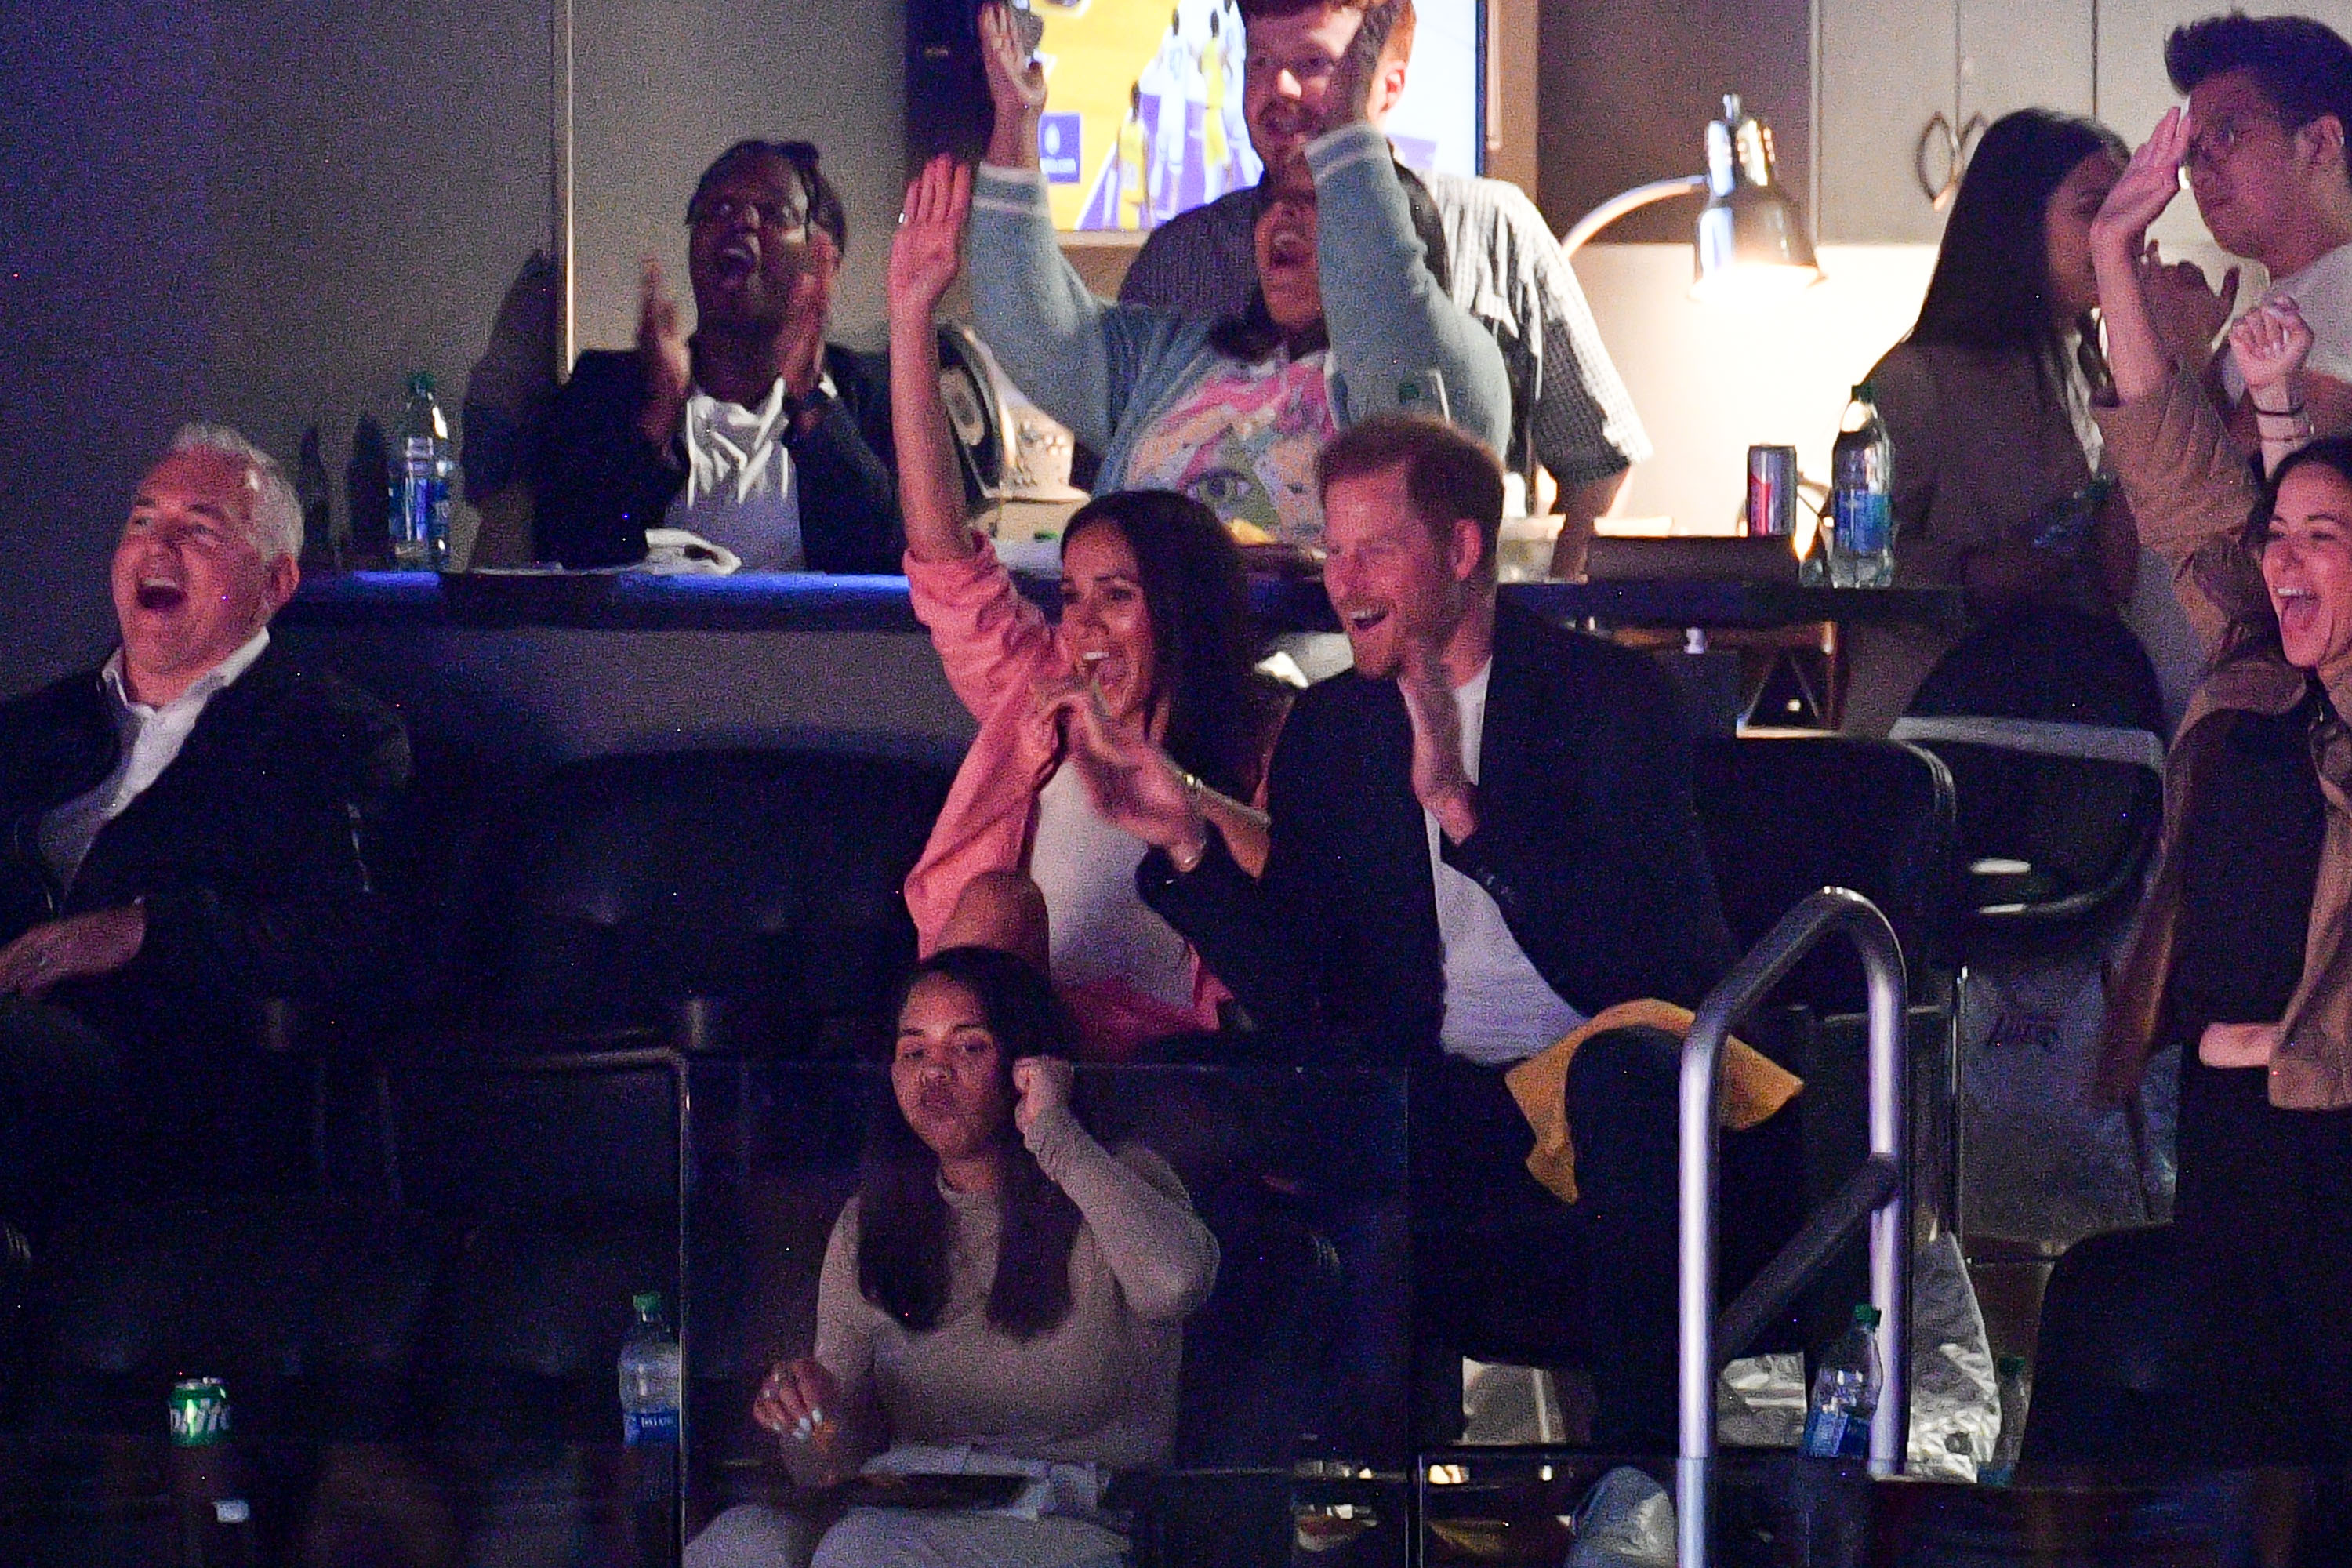 Harry, duque de Sussex, y Meghan, duquesa de Sussex, durante el partido entre Los Ángeles Lakers y Memphis Grizzlies en el Crypto.com Arena, el 24 de abril de 2023 en California. | Foto: Getty Images